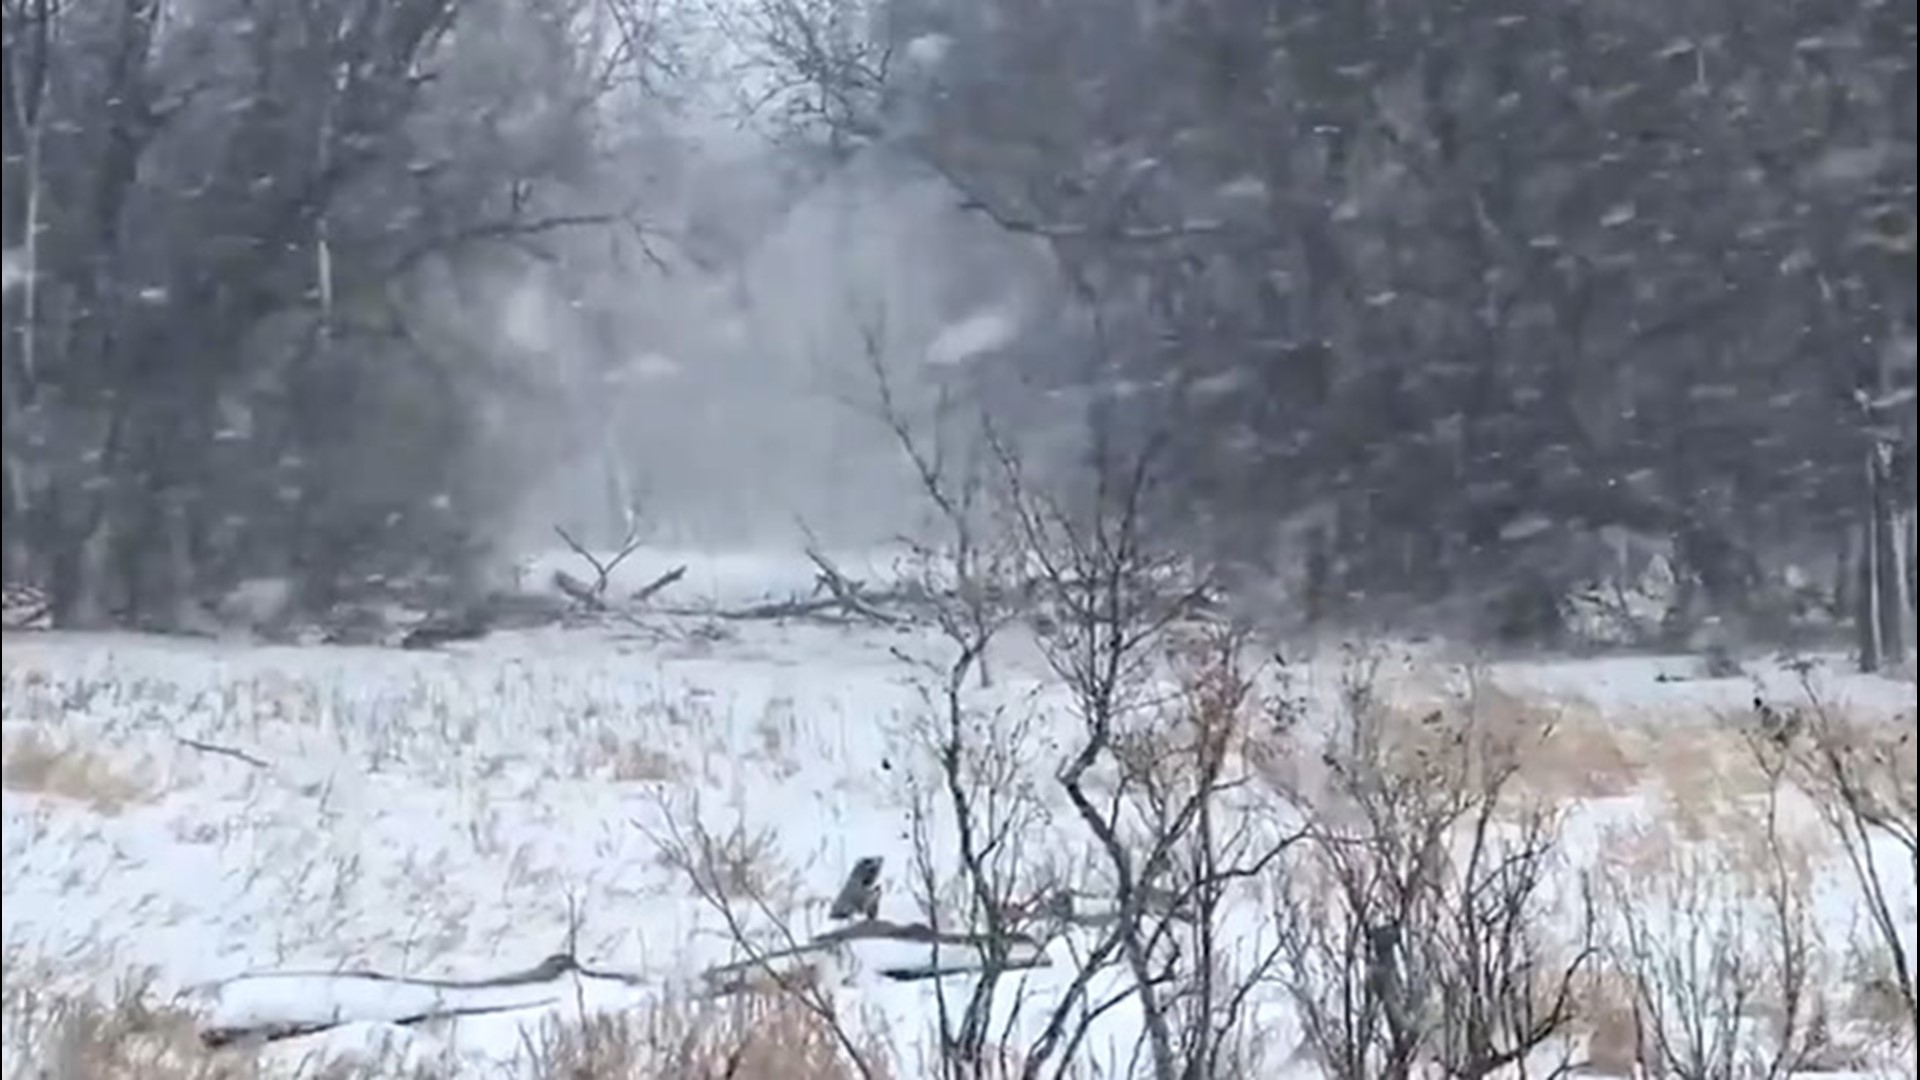 Heavy snow fell on Dumont, Minnesota, covering the brush alongside the road on Jan. 24.